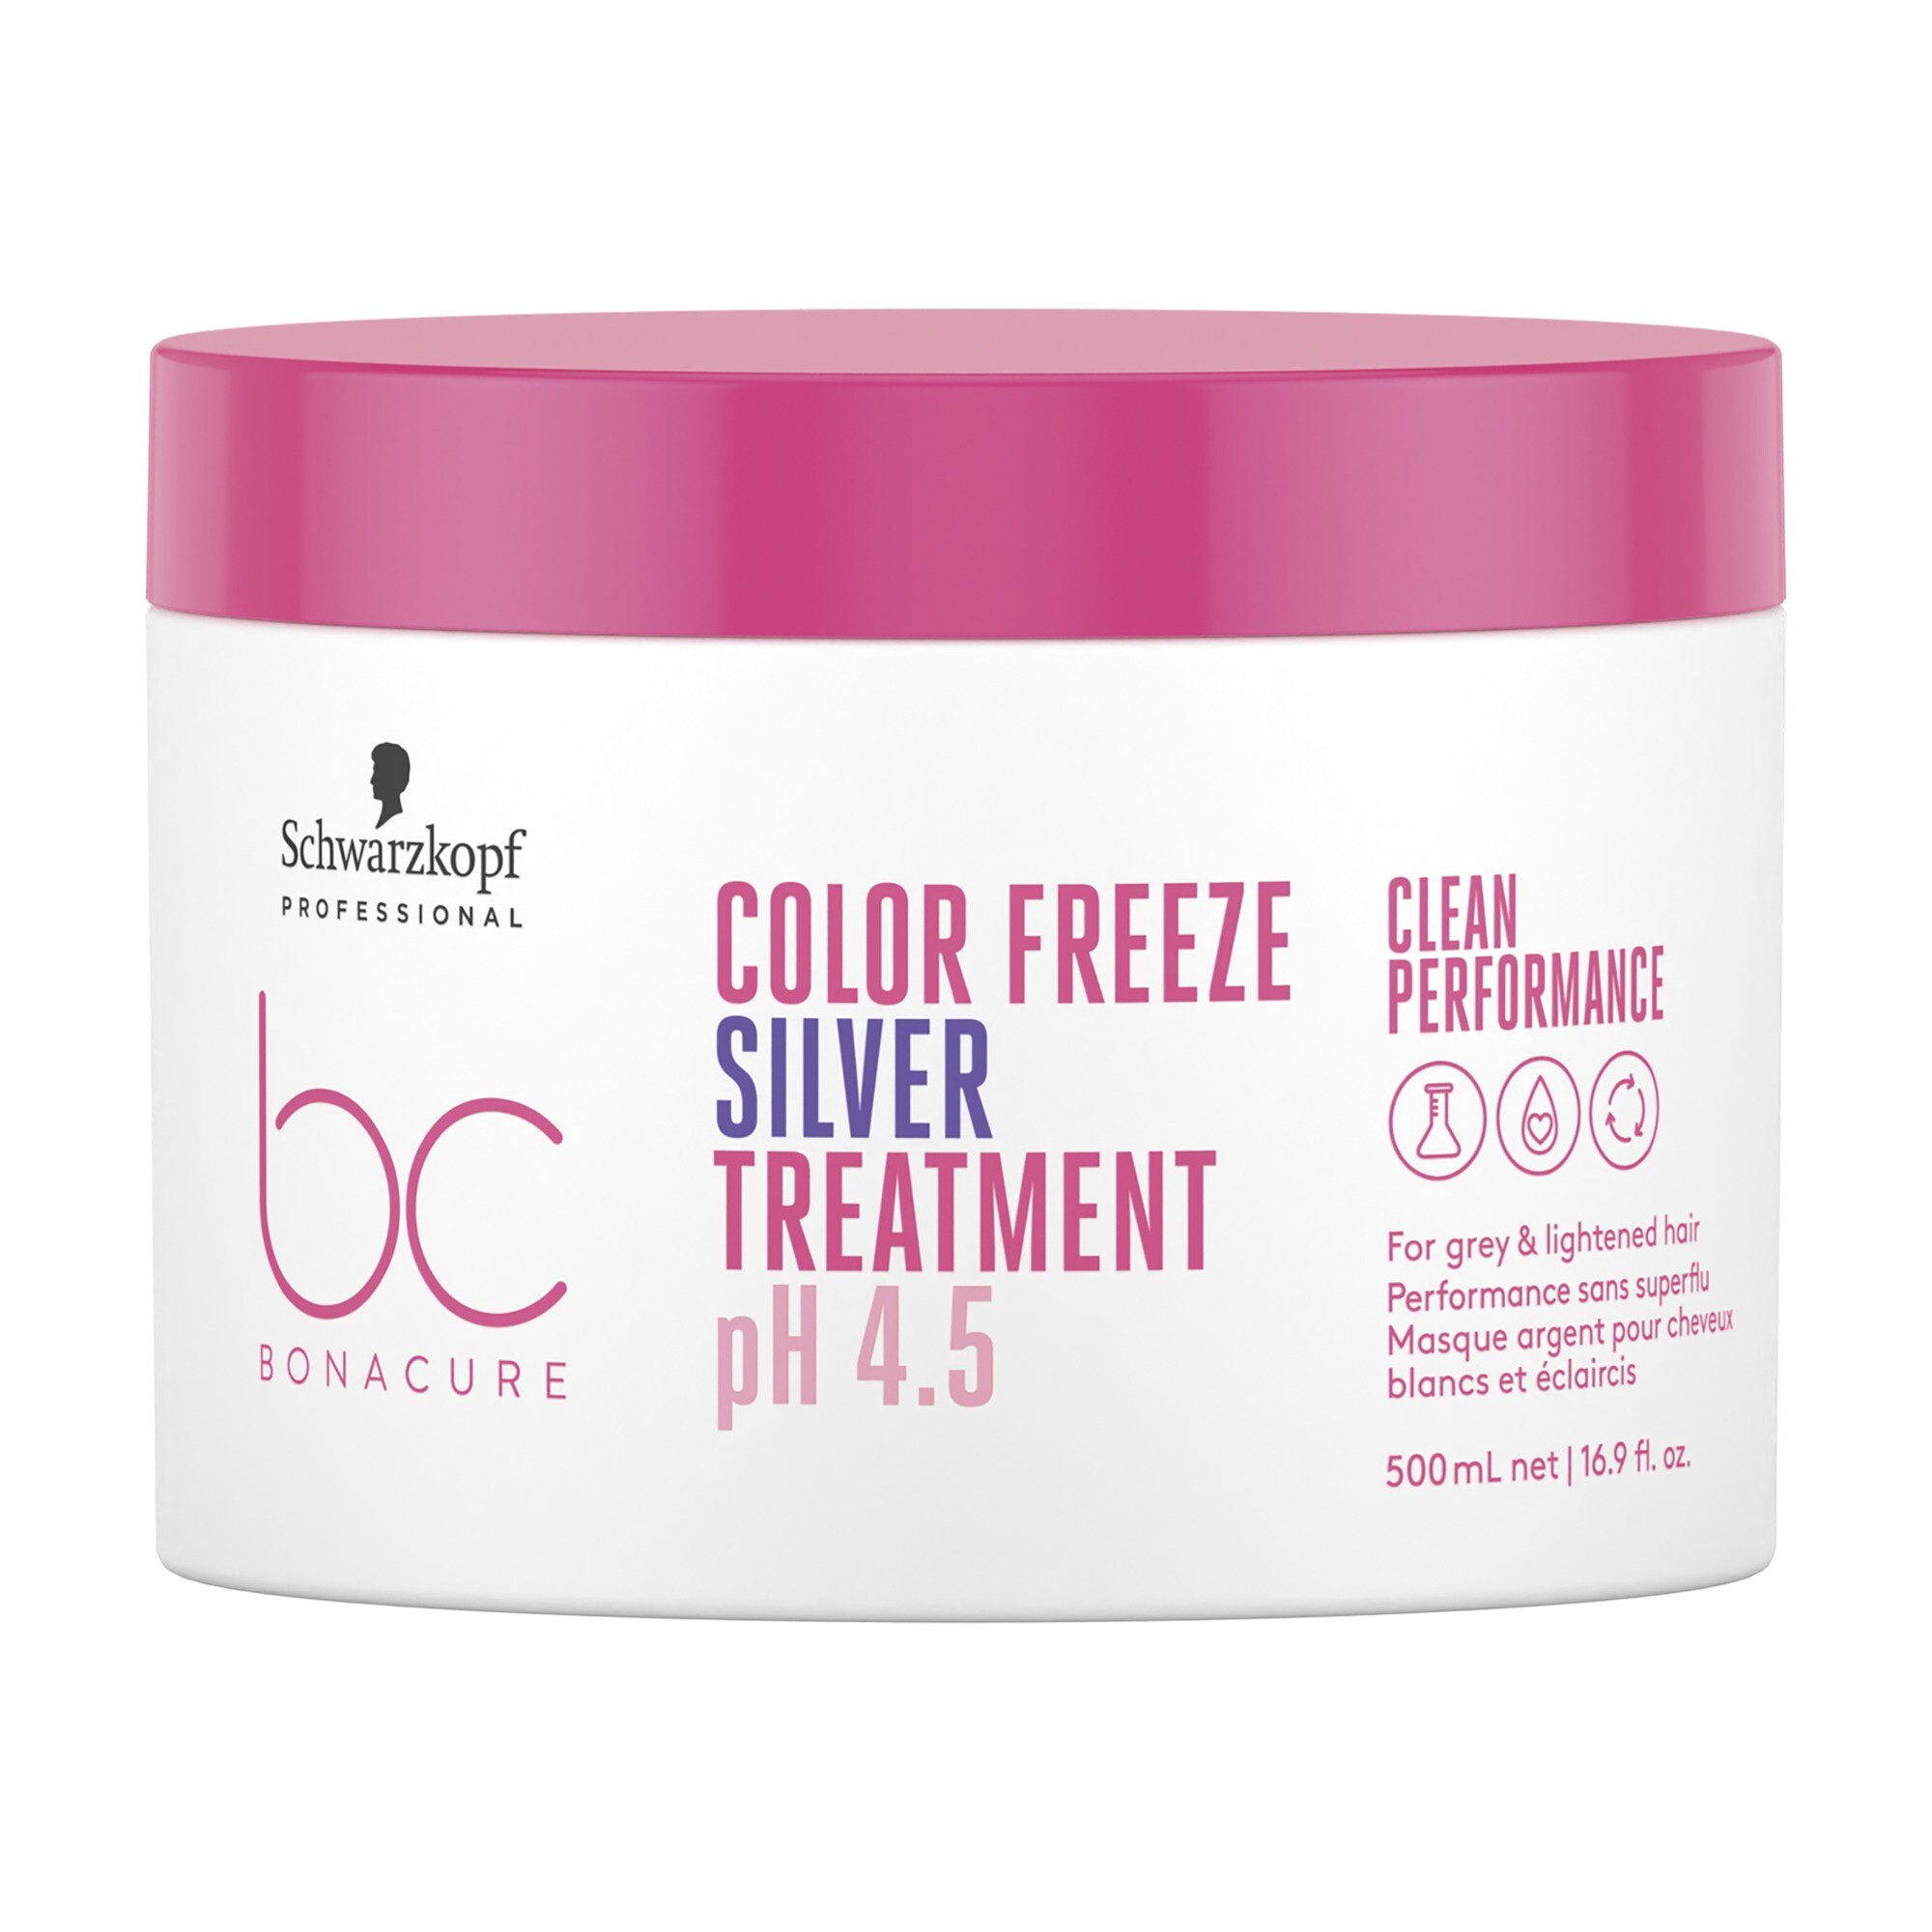 Bonacure Color Freeze Silver Treatment 500ml